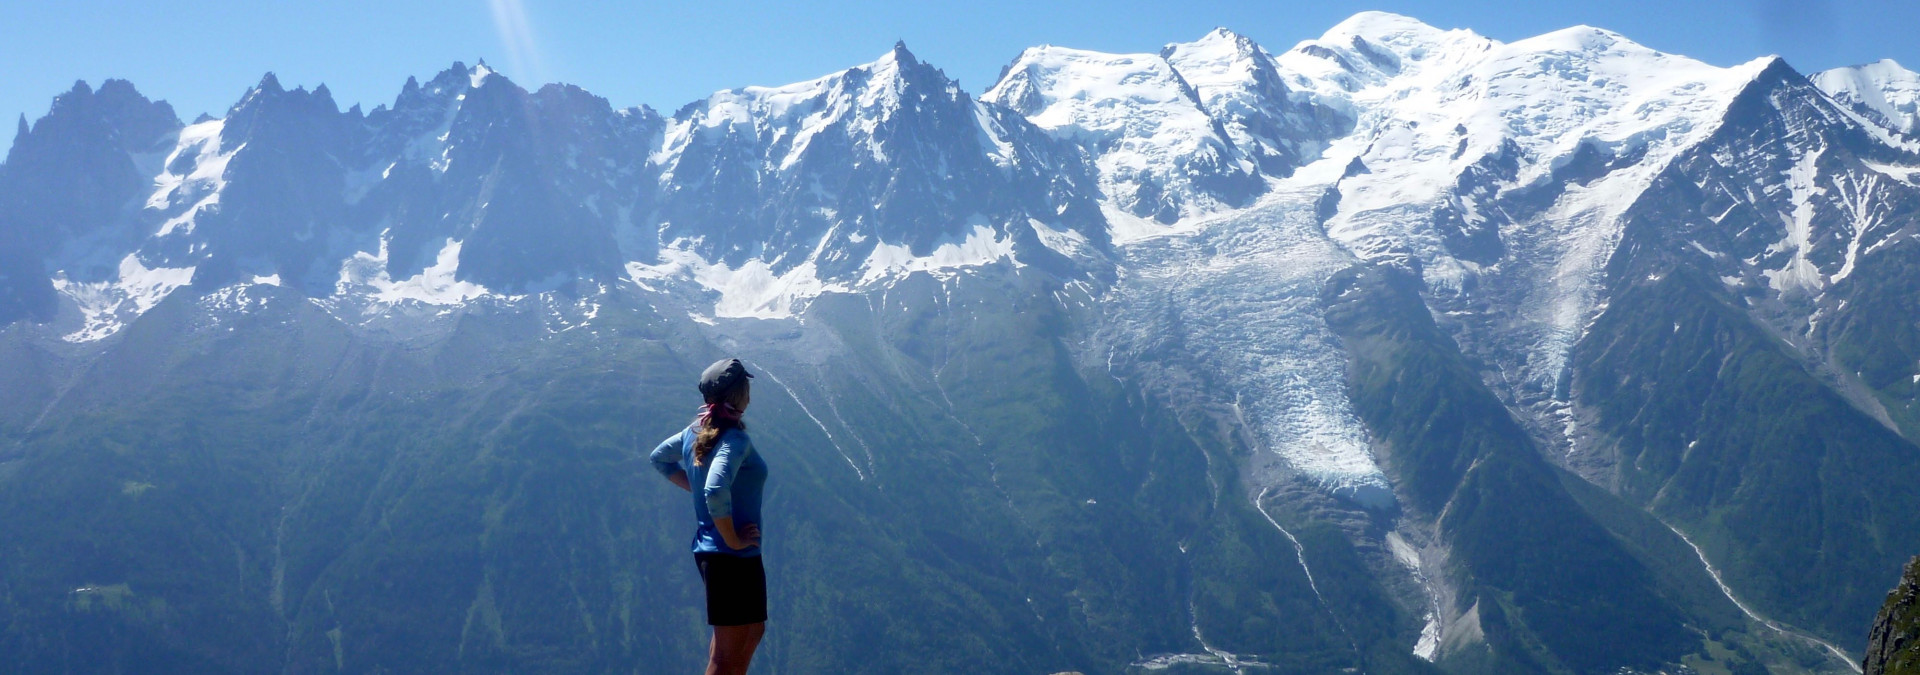 Classic Tour du Mont Blanc